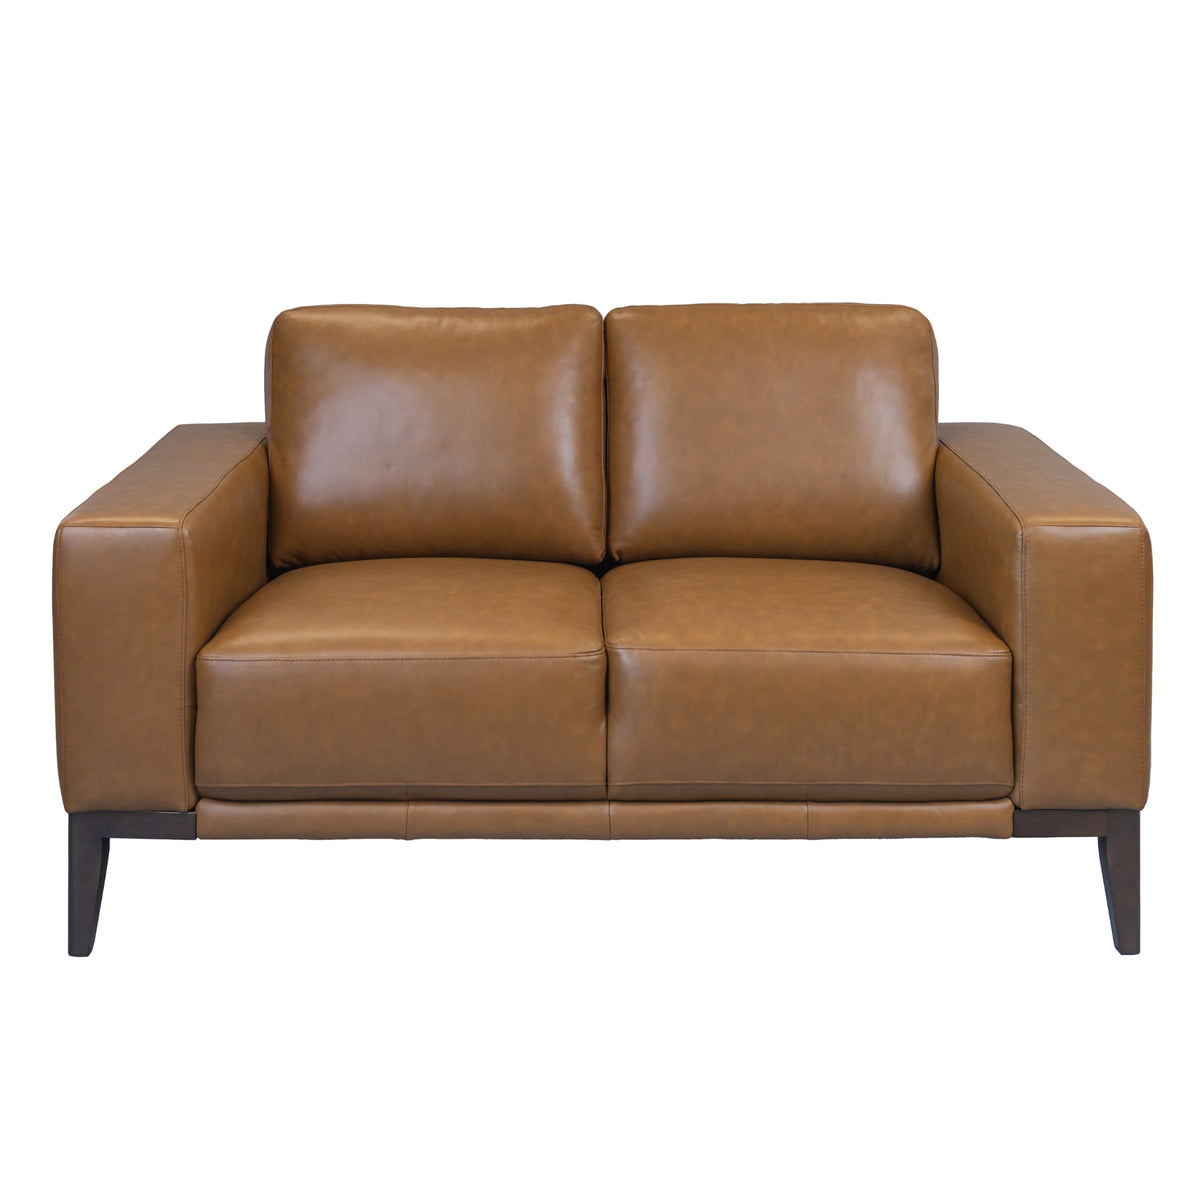 Lorenzo Leather Sofa 2 + 3 Seater Tan